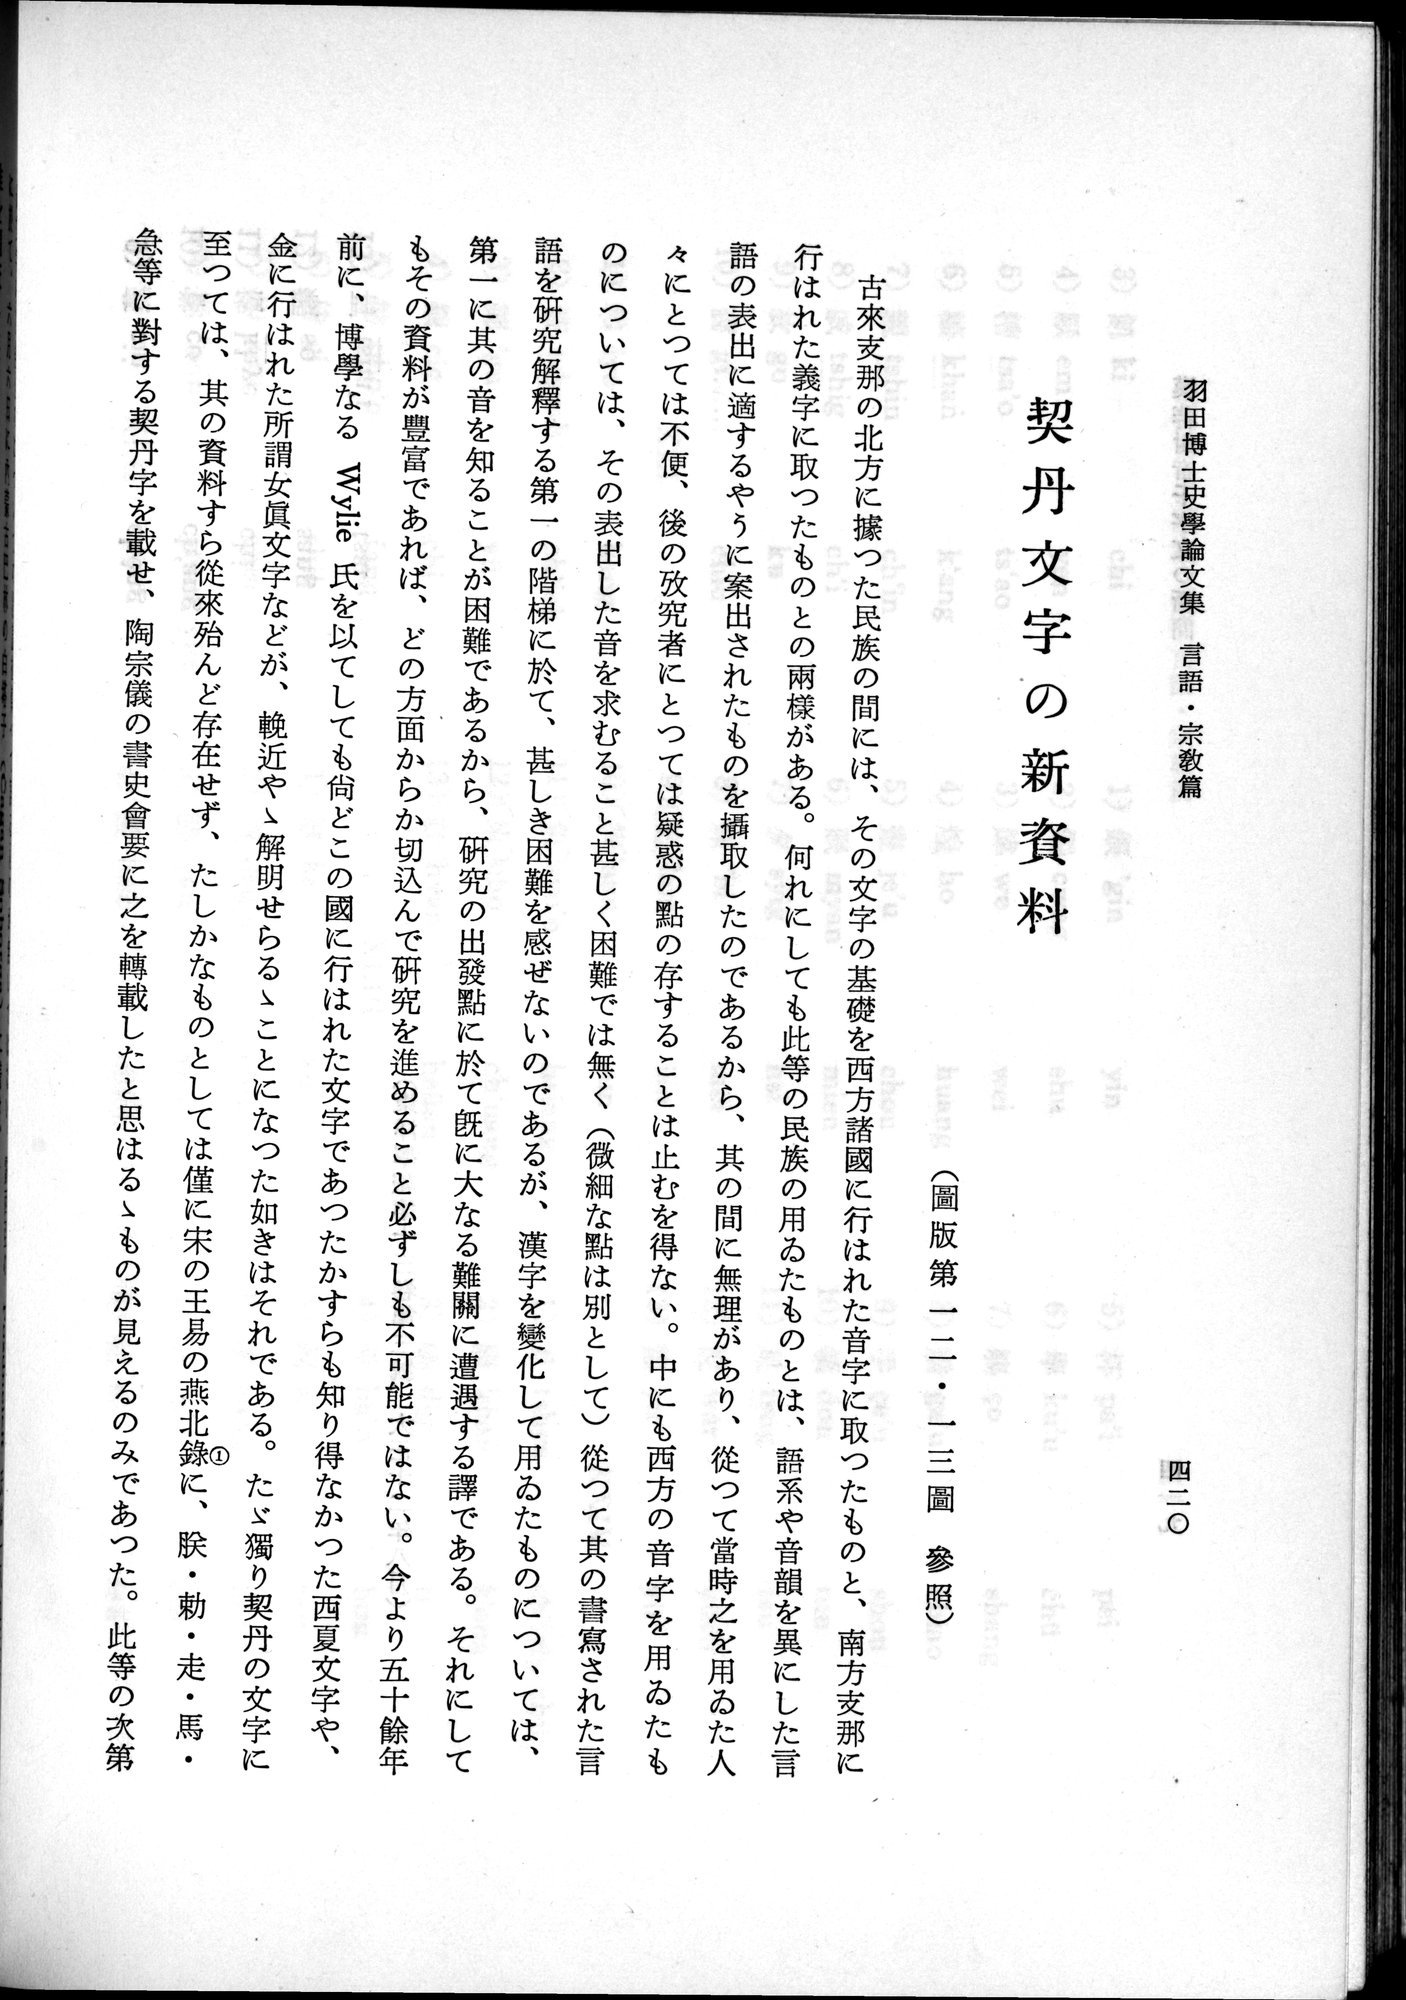 羽田博士史学論文集 : vol.2 / Page 482 (Grayscale High Resolution Image)